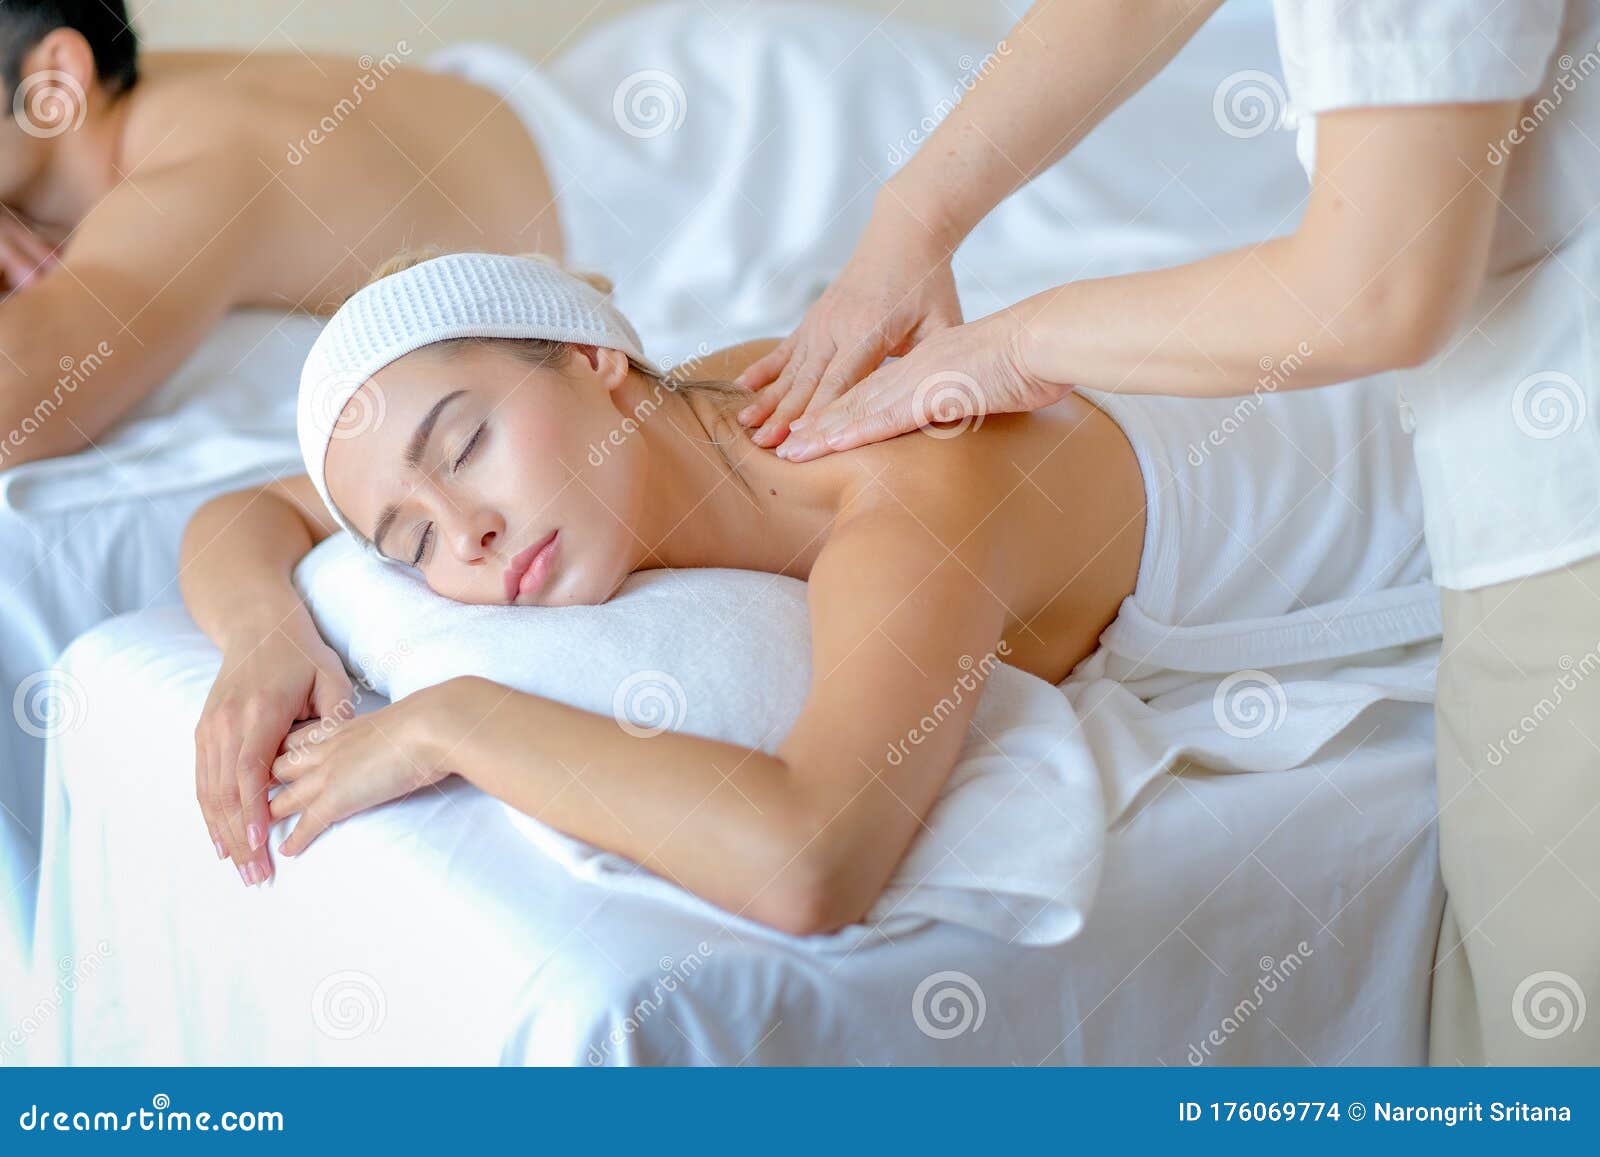 Woman body masaj